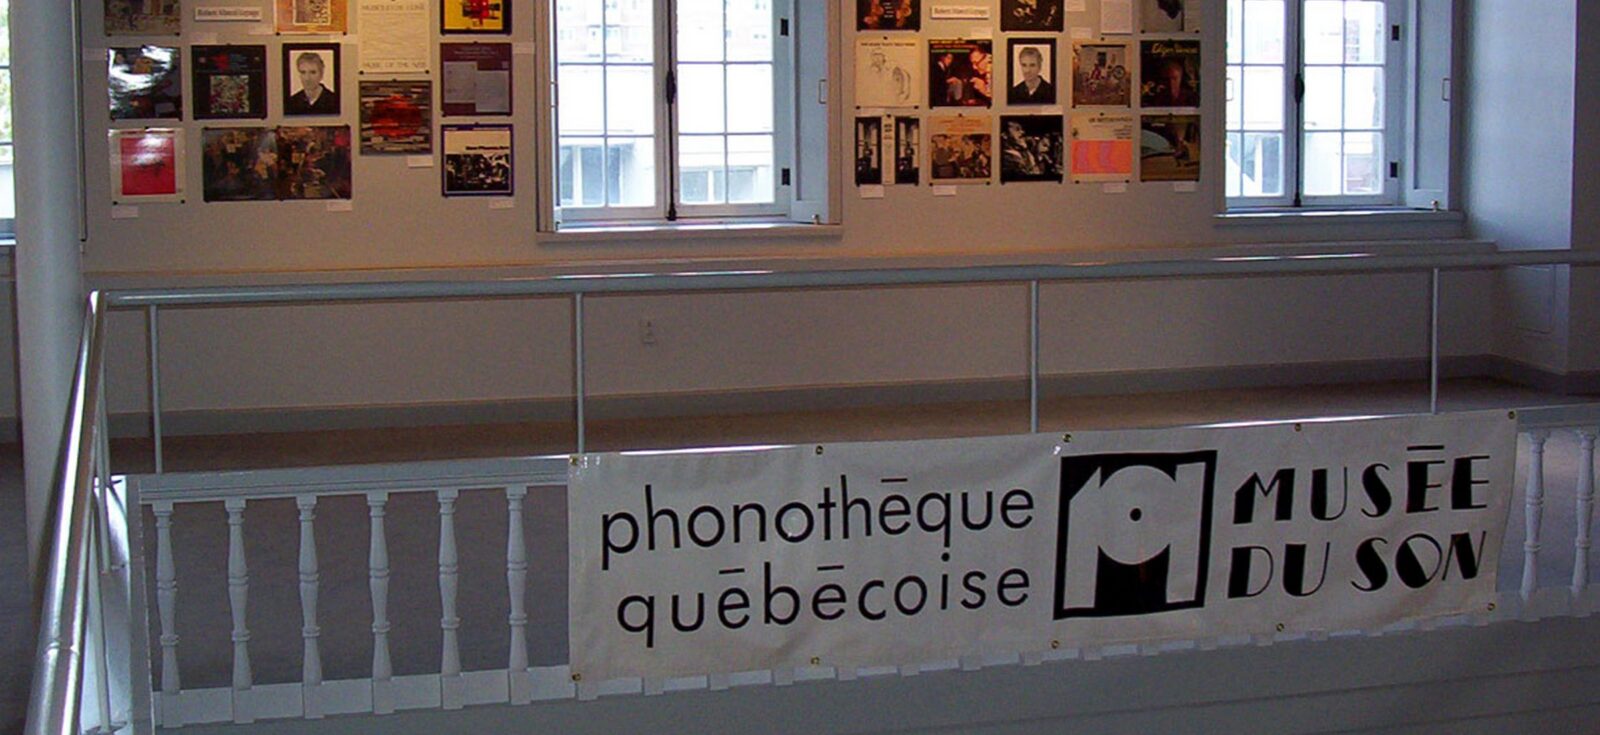 Phonothèque québécoise
